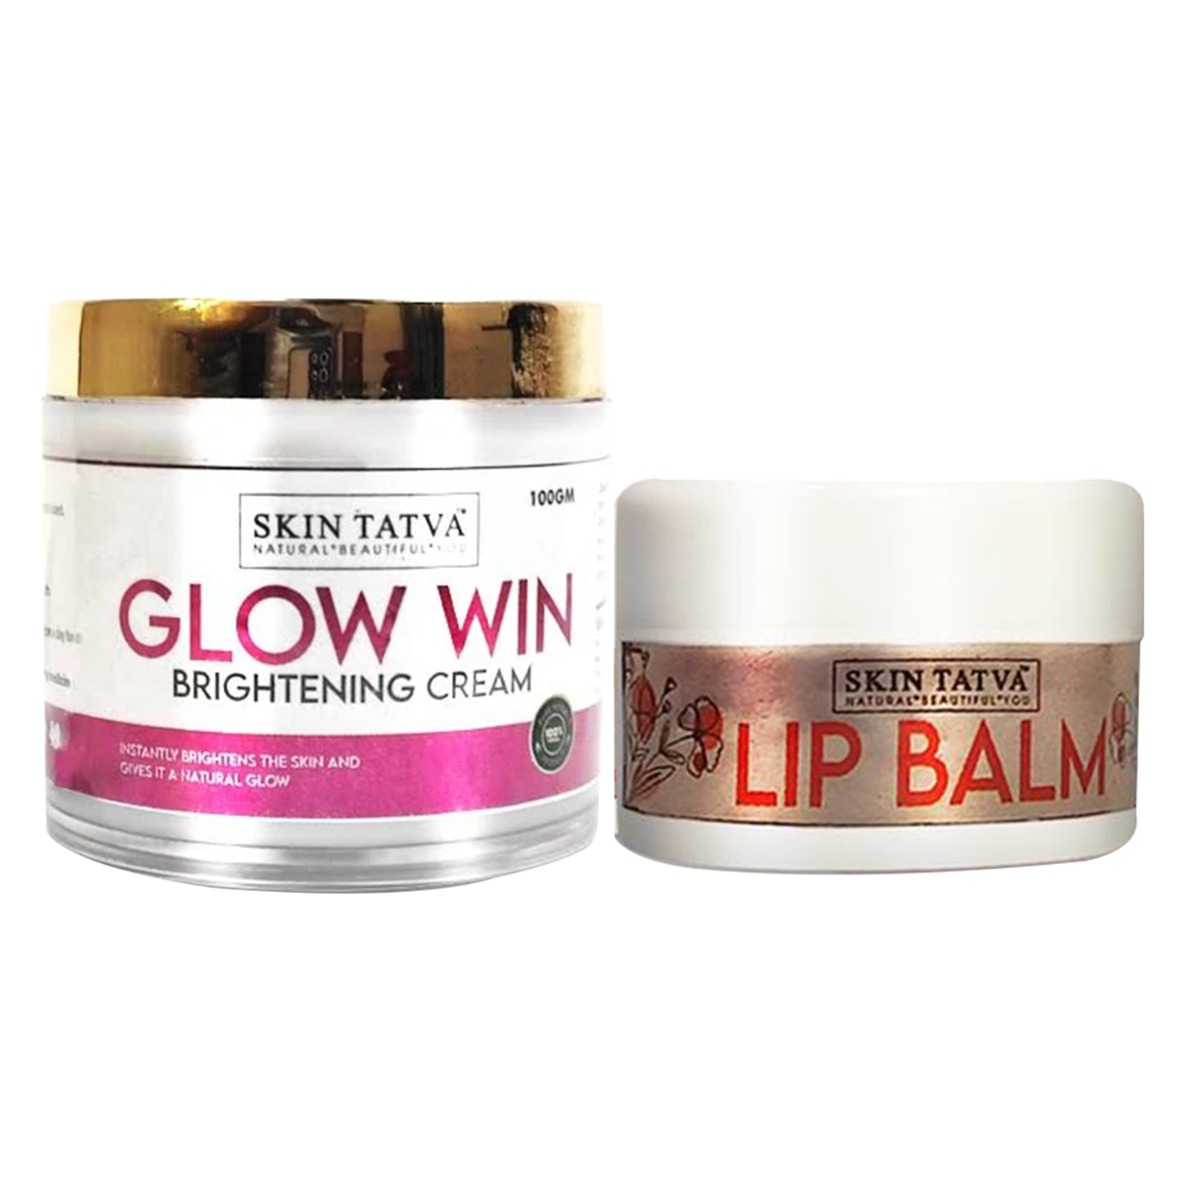 Skin Tatva Glow Win Brightening Cream & Lip Balm, combo